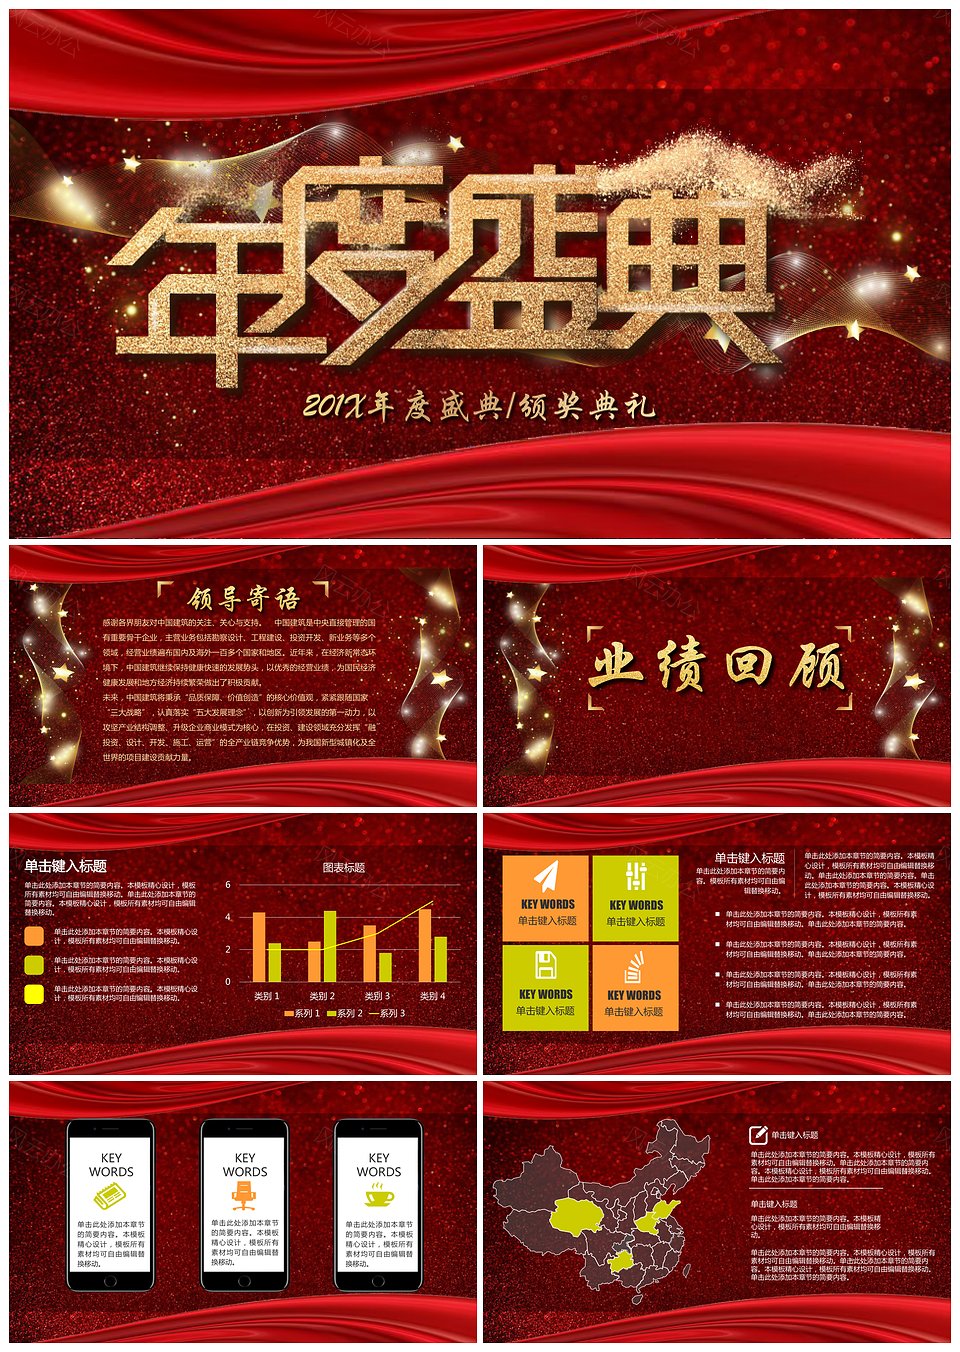 企业年度晚会暨颁奖典礼PPT模板(图1)